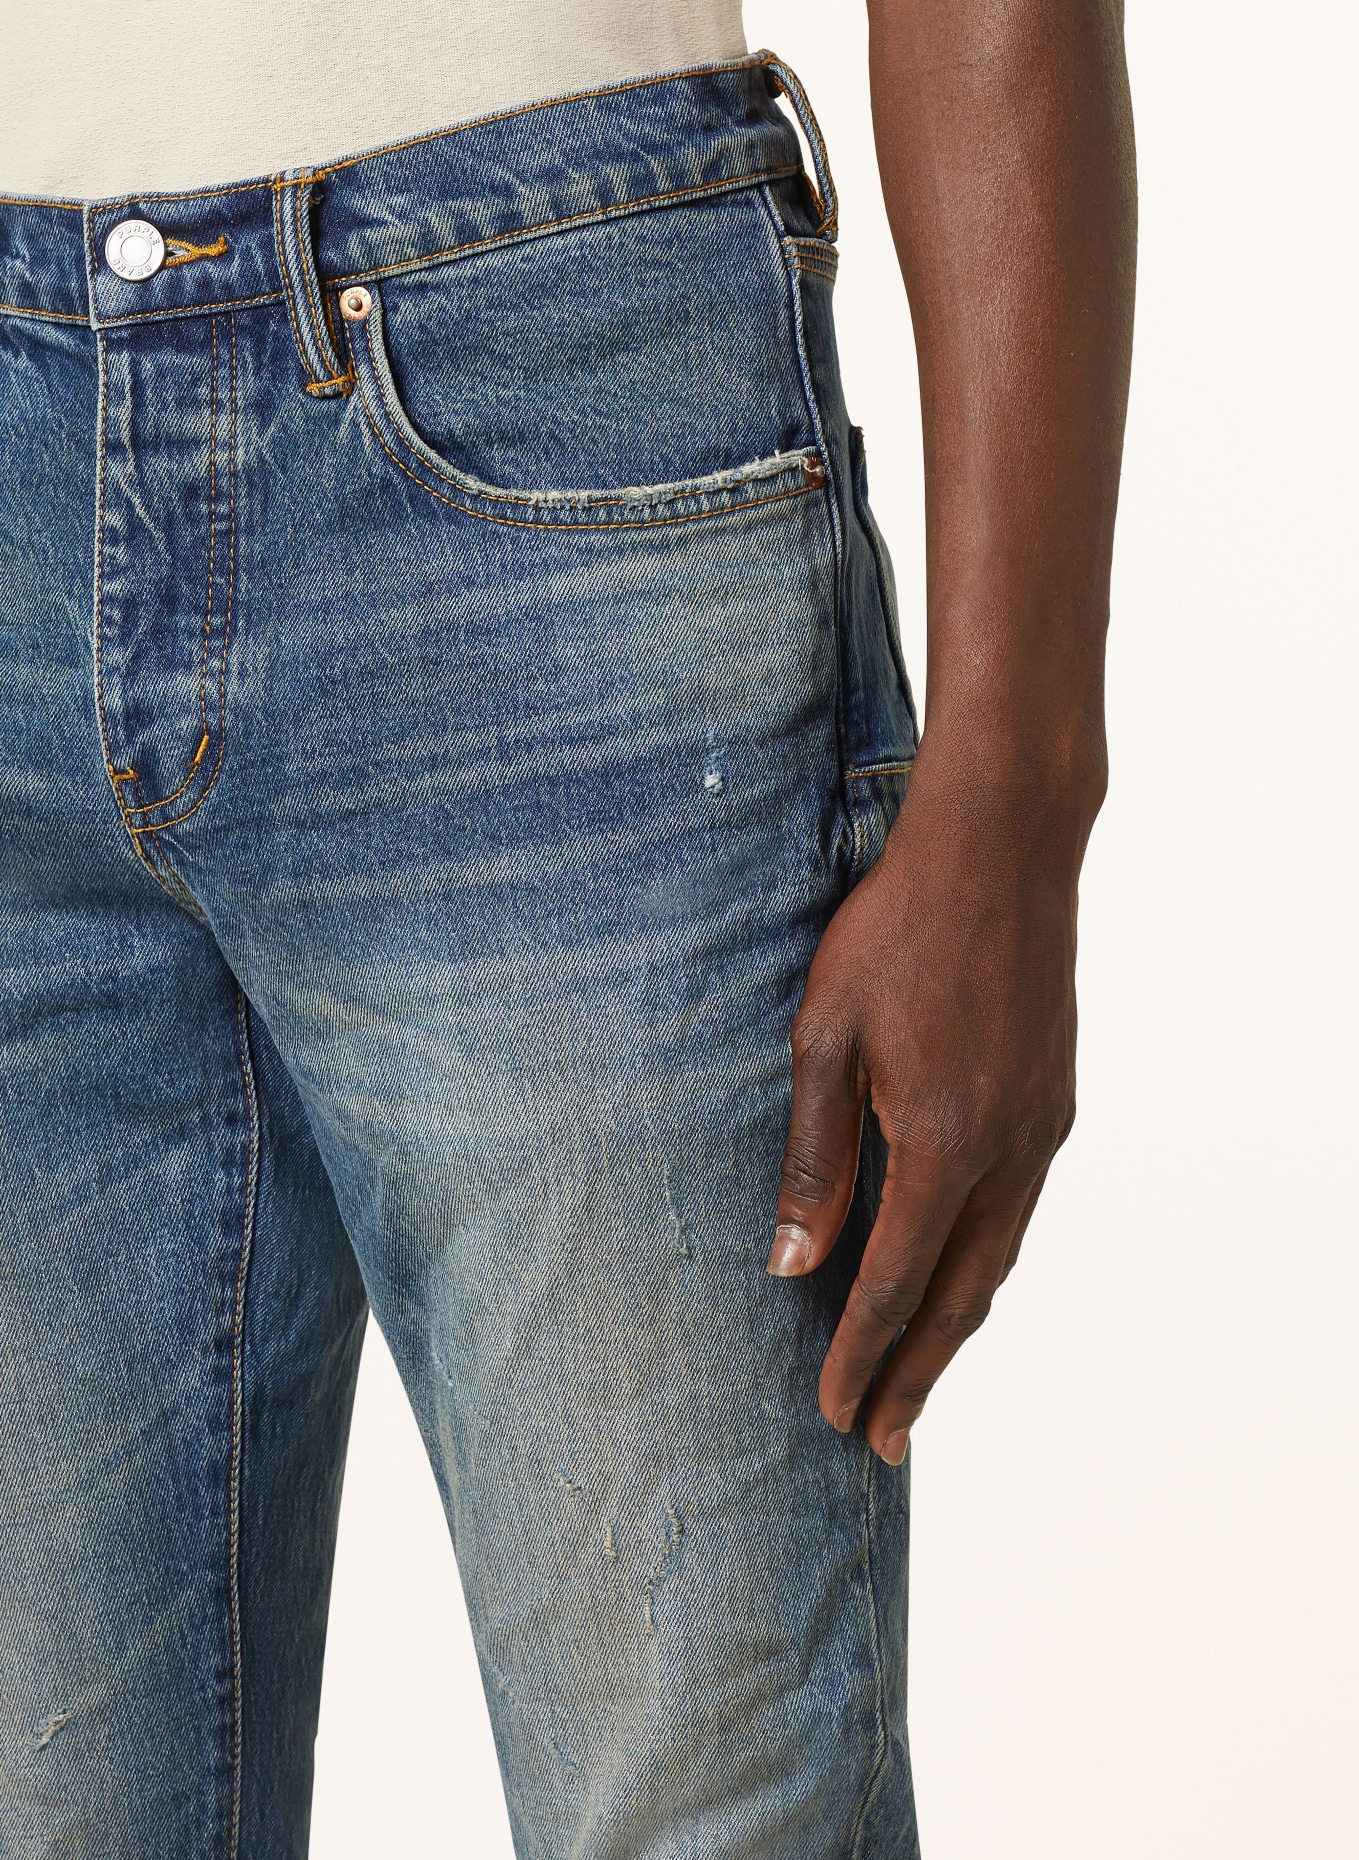 PURPLE BRAND Destroyed jeans skinny fit, Color: DK INDIGO (Image 5)